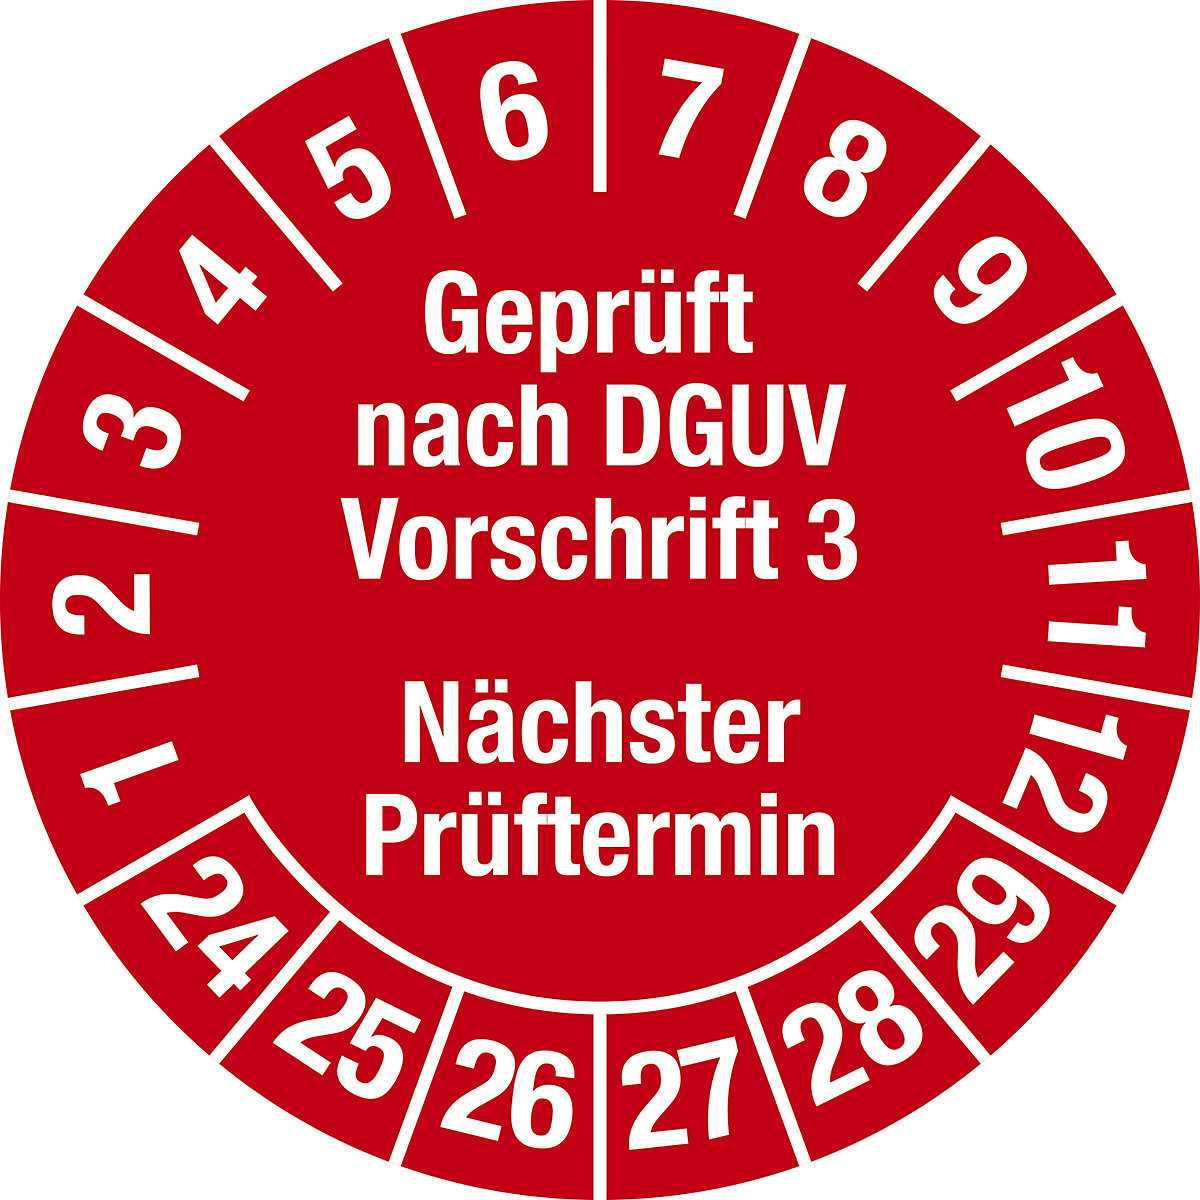 Geprüft nach DGUV Vorschrift 3, Dokumentenfolie, Ø 30 mm, VE 10 Stk, 24 – 29, rot-2